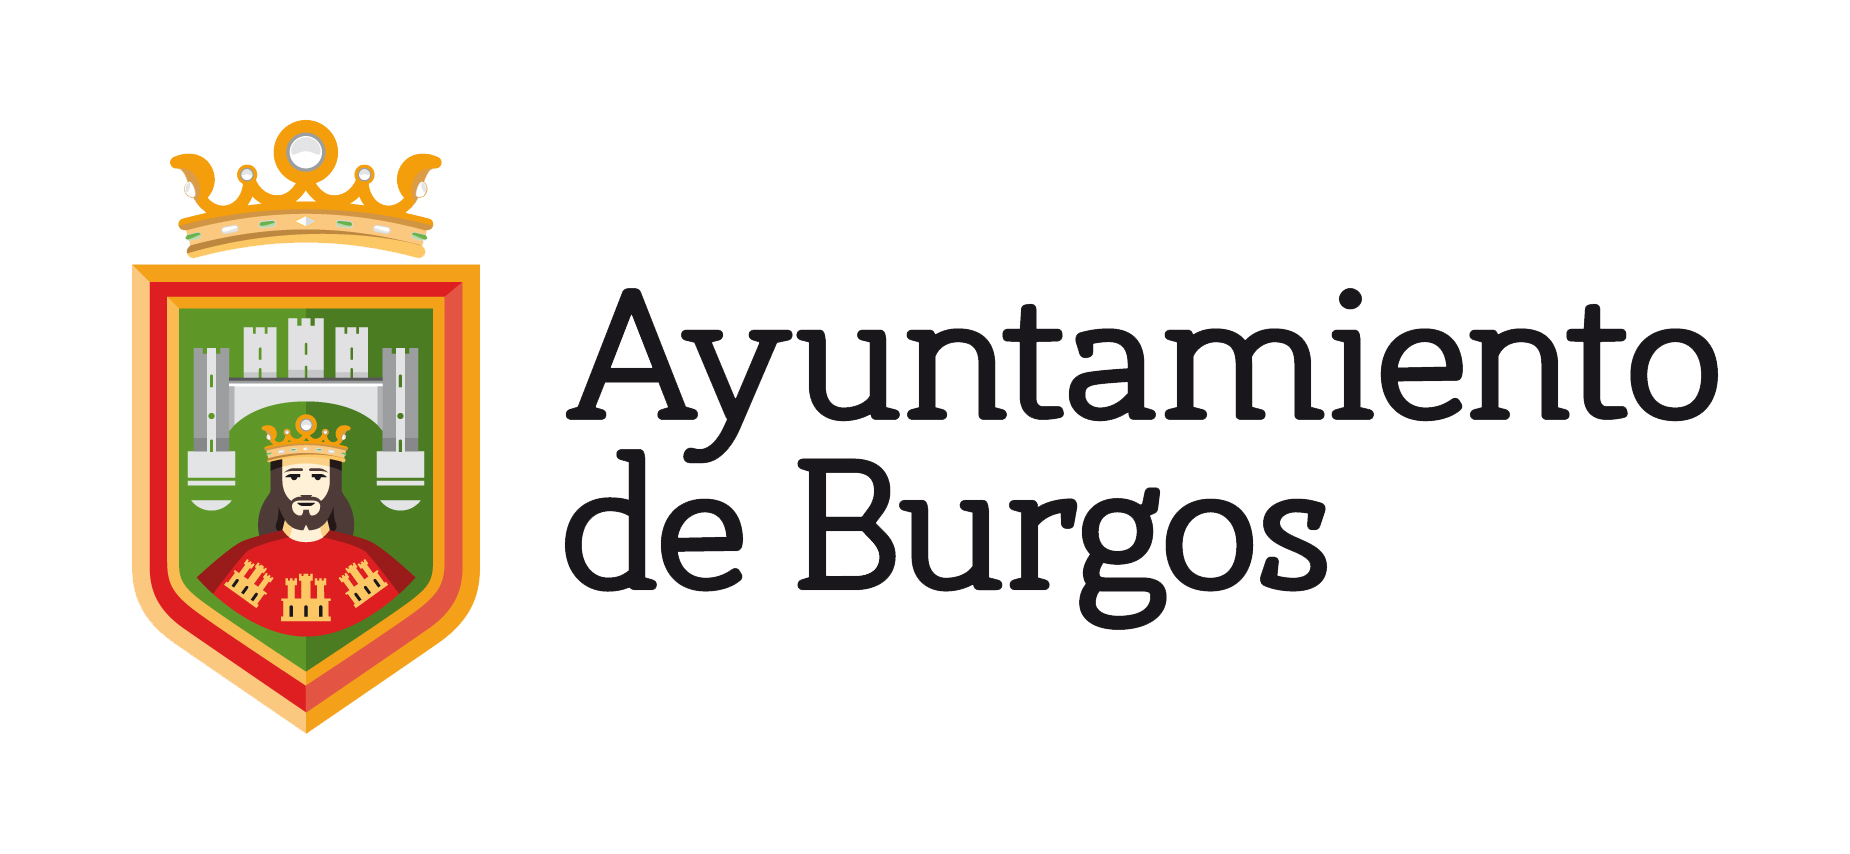  El Ayuntamiento de Burgos anuncia plazas para Auxiliares de Bibliotecas en la próxima OEP